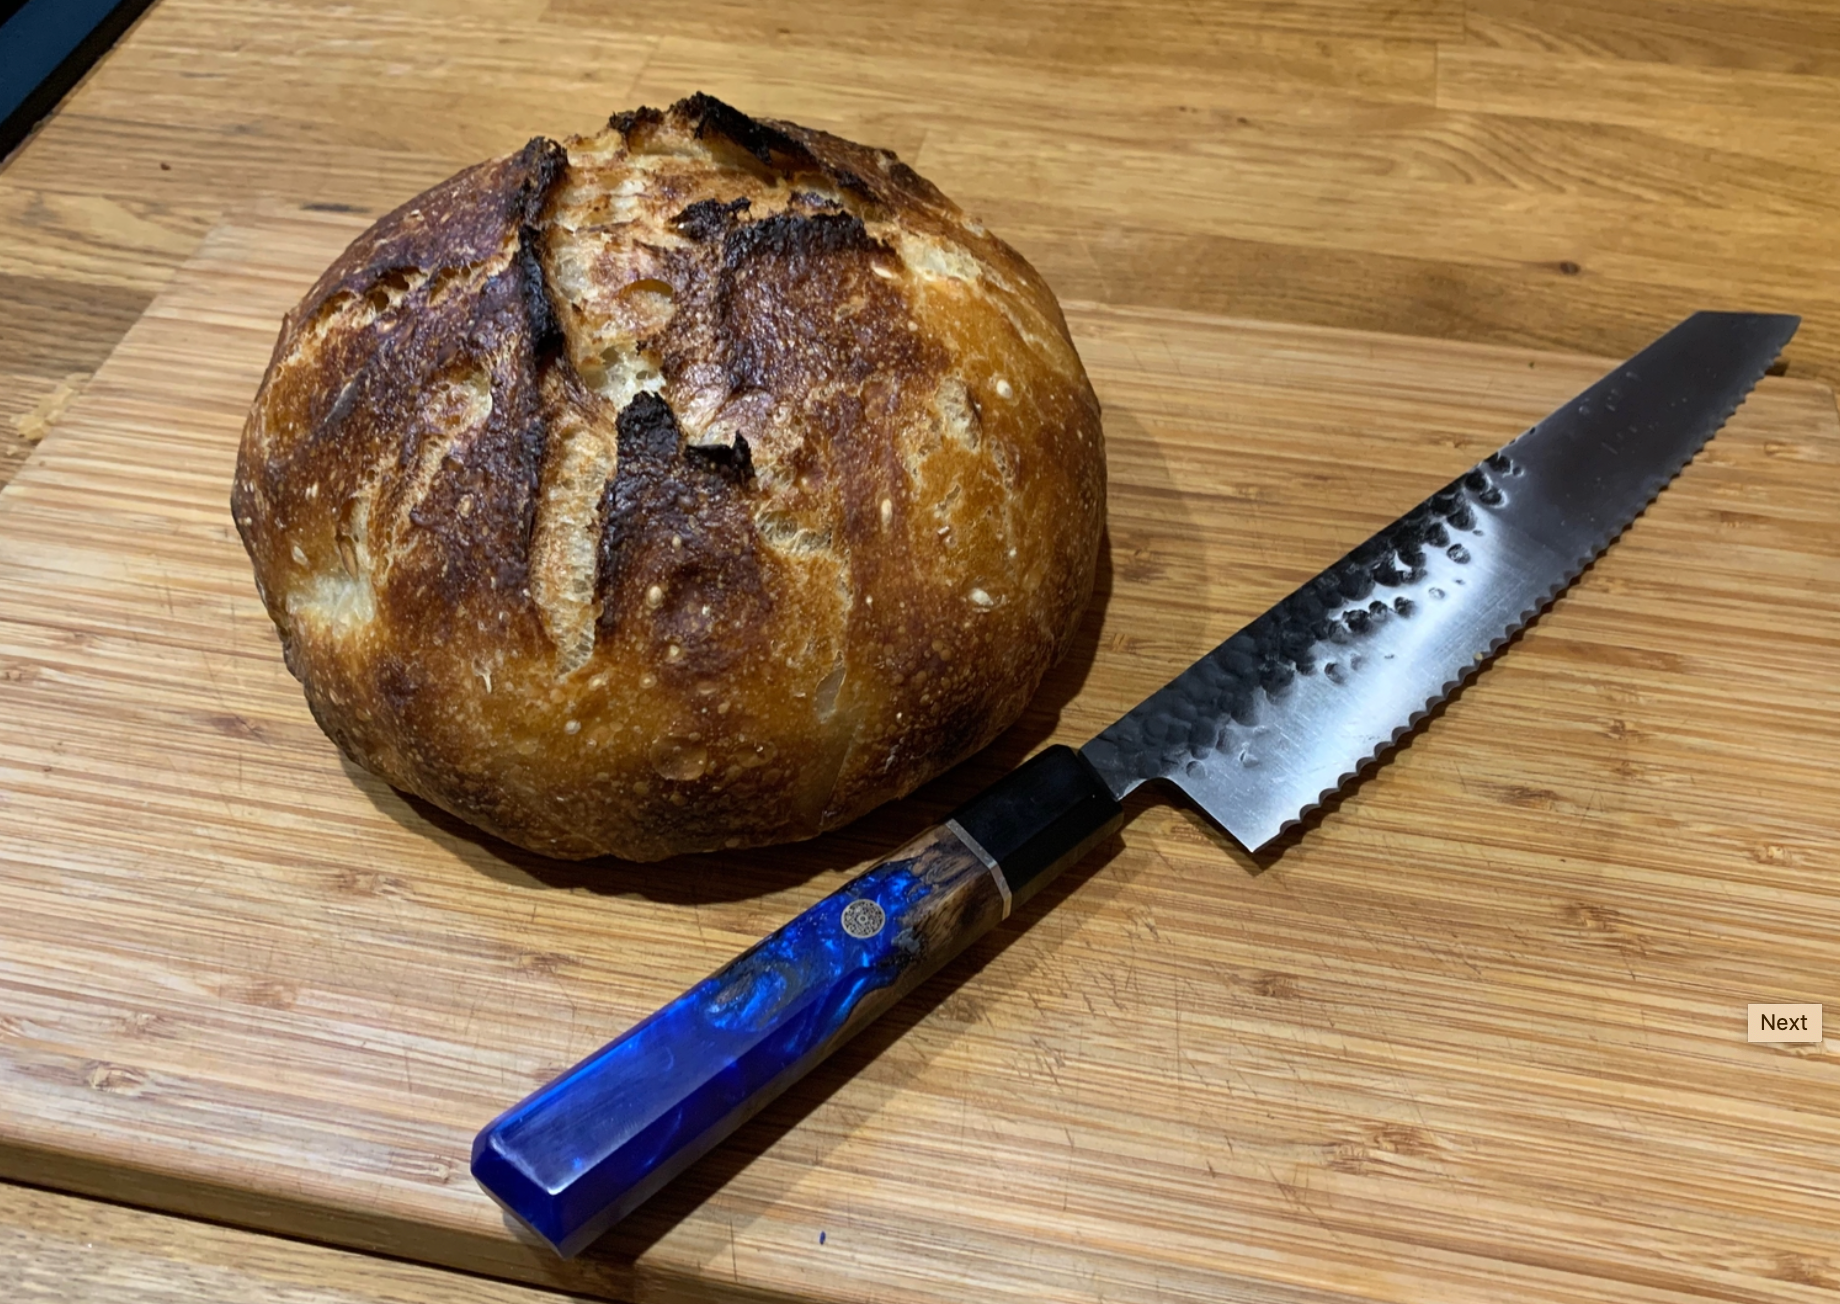 Japanese bread knife, DMS Pastry Knife